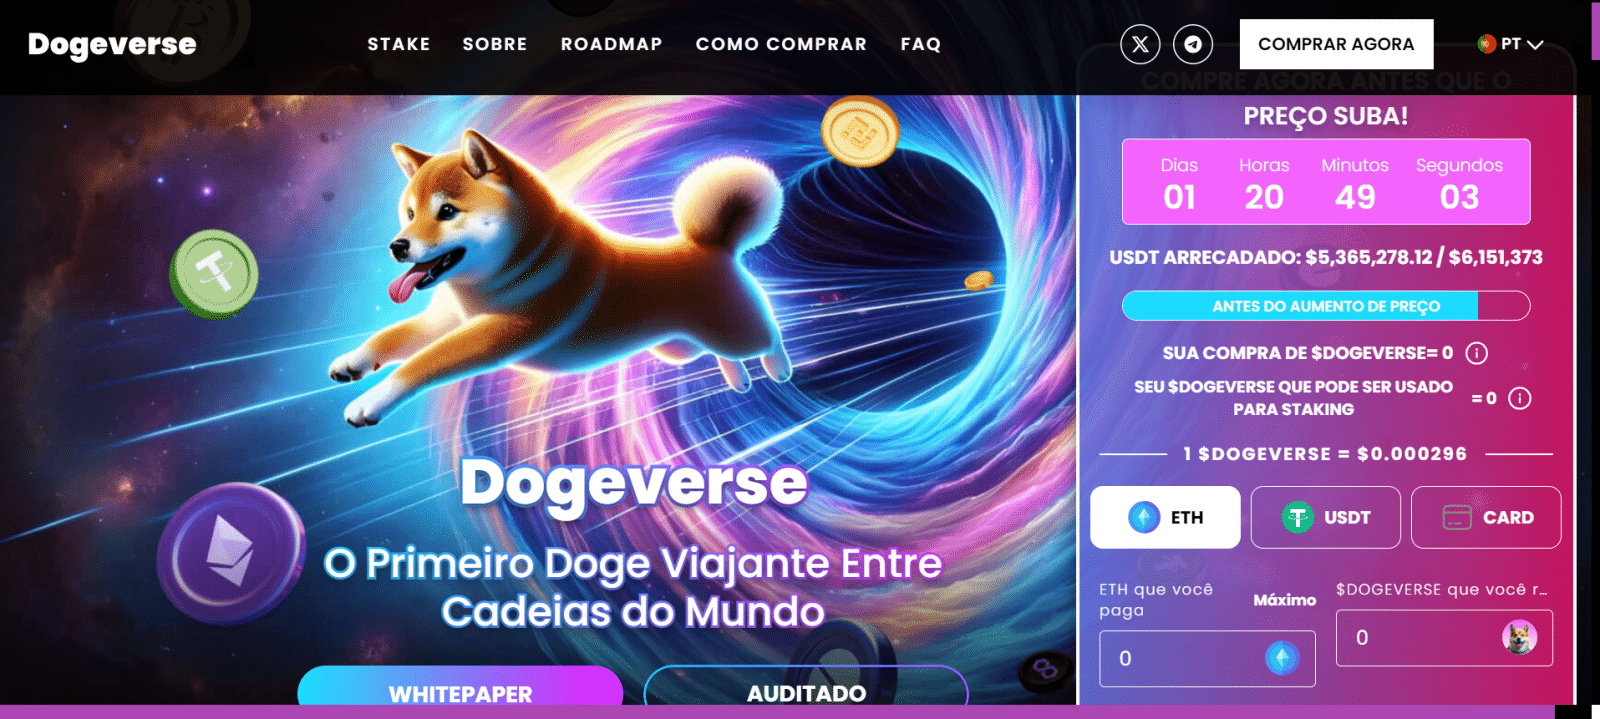 Printscreend da página inicial do projeto Dogeverse